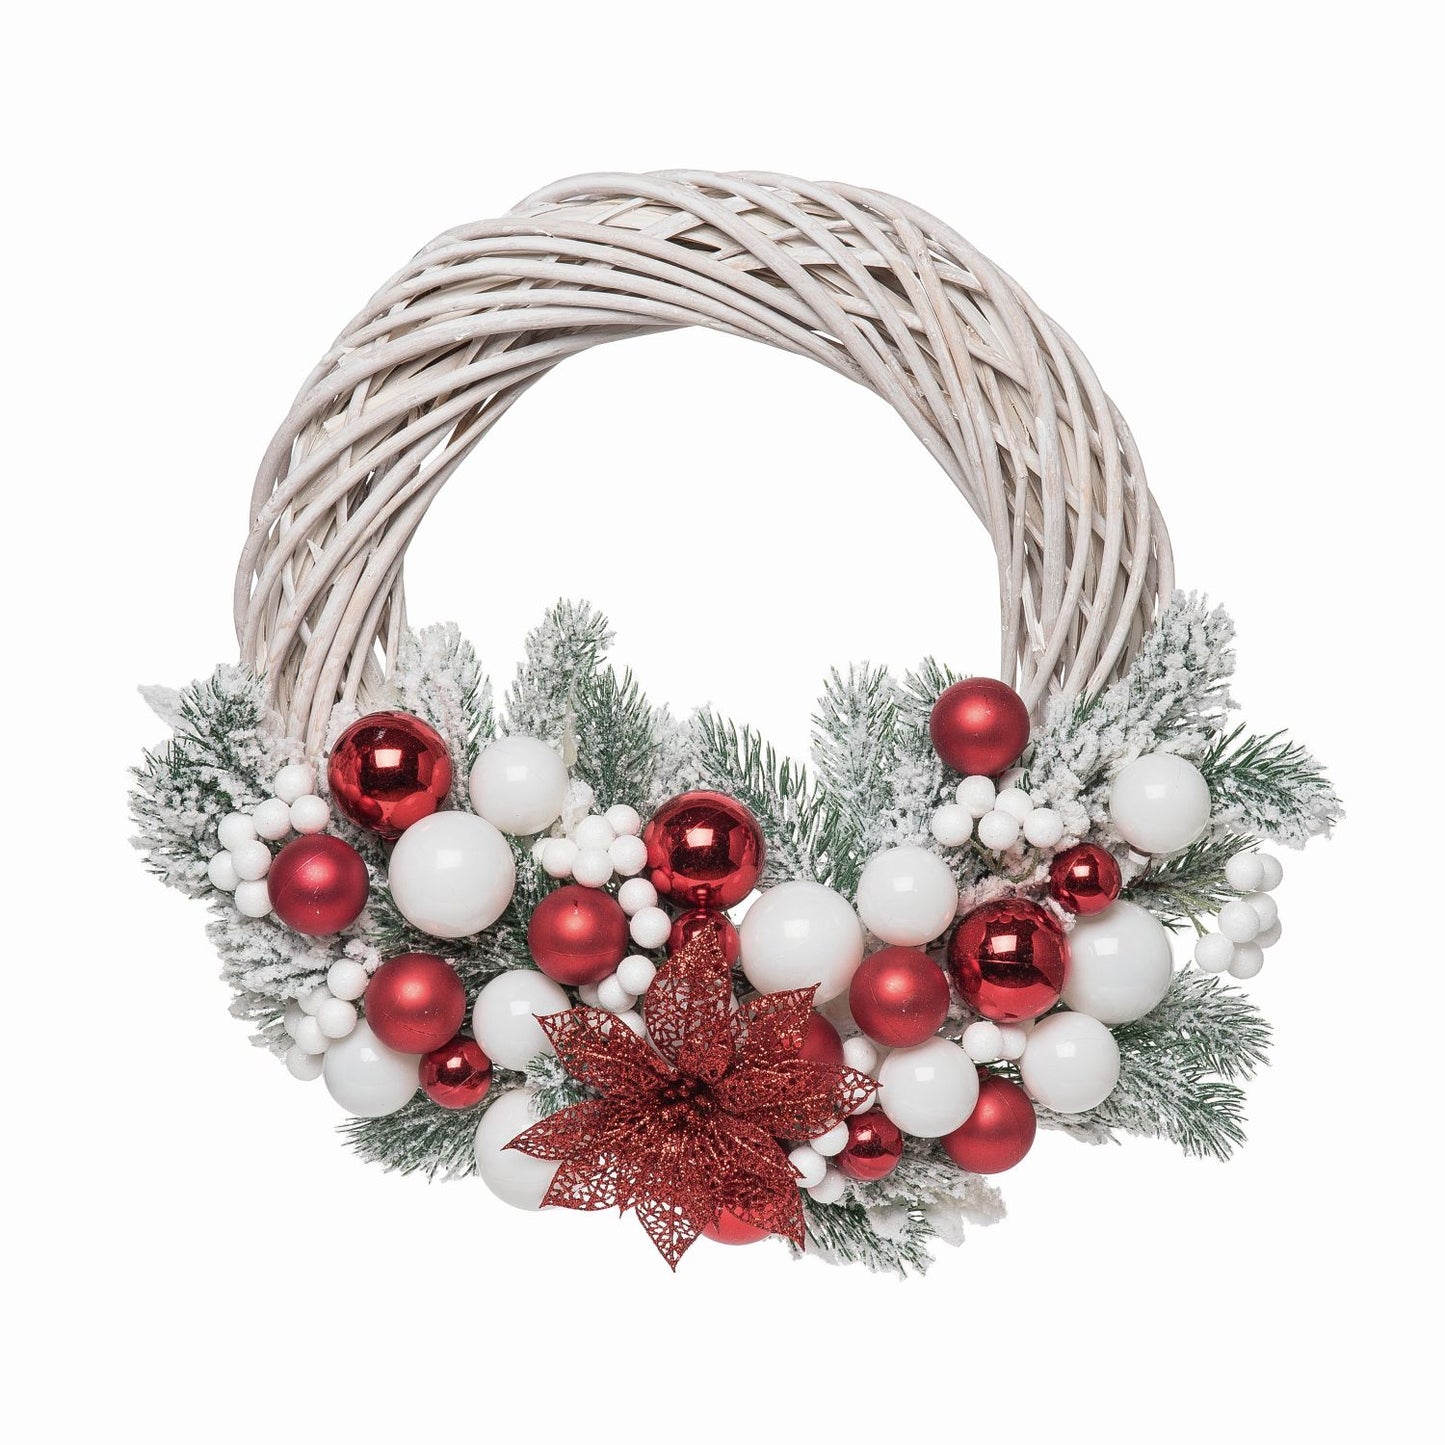 Transpac Joyful Ornaments Christmas Wreath